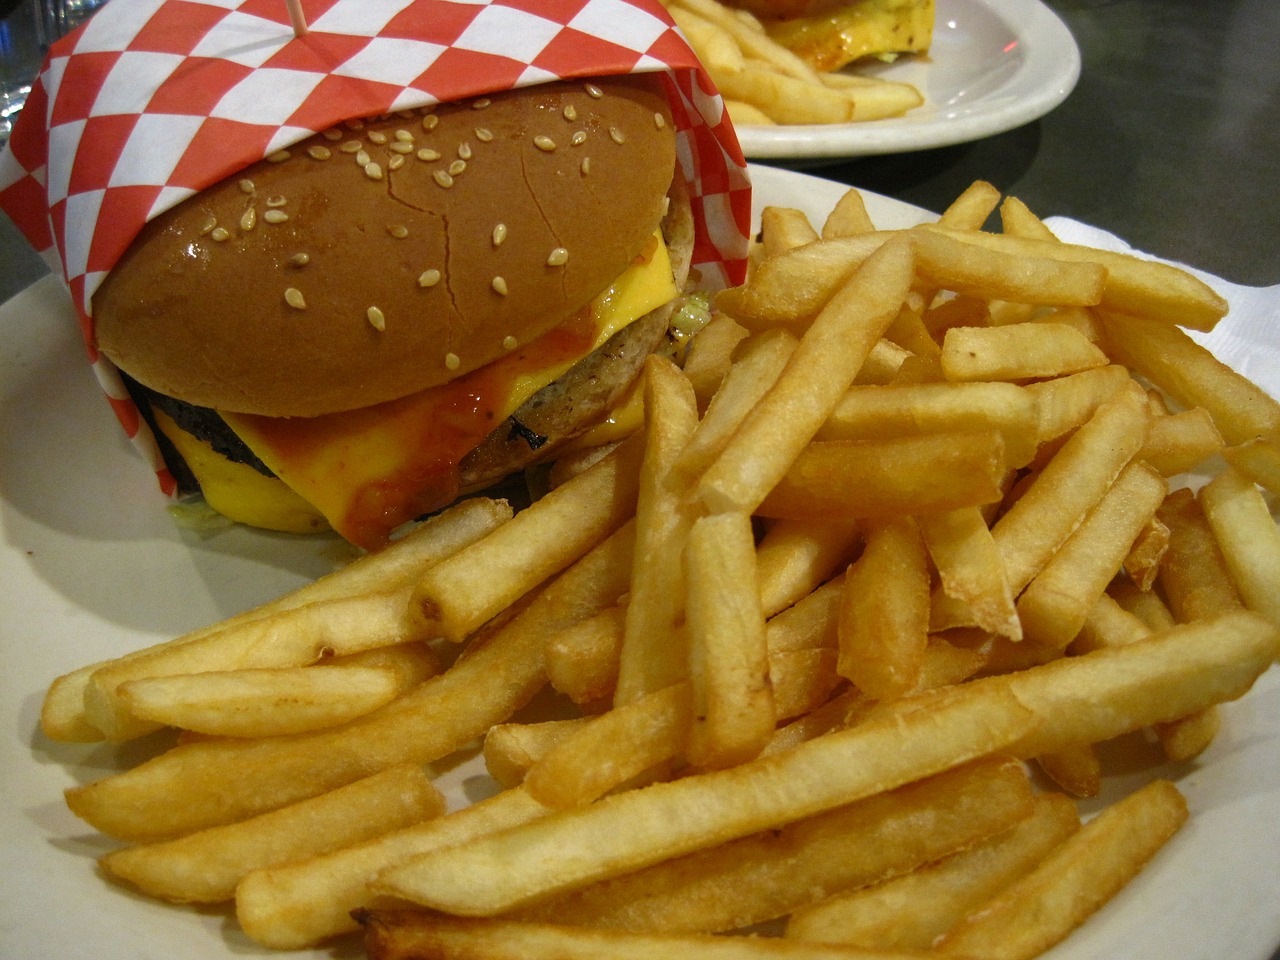 A McDonald's feljelentette a Burger Kinget, mert Big Jackre kereszteltek egy hamburgert